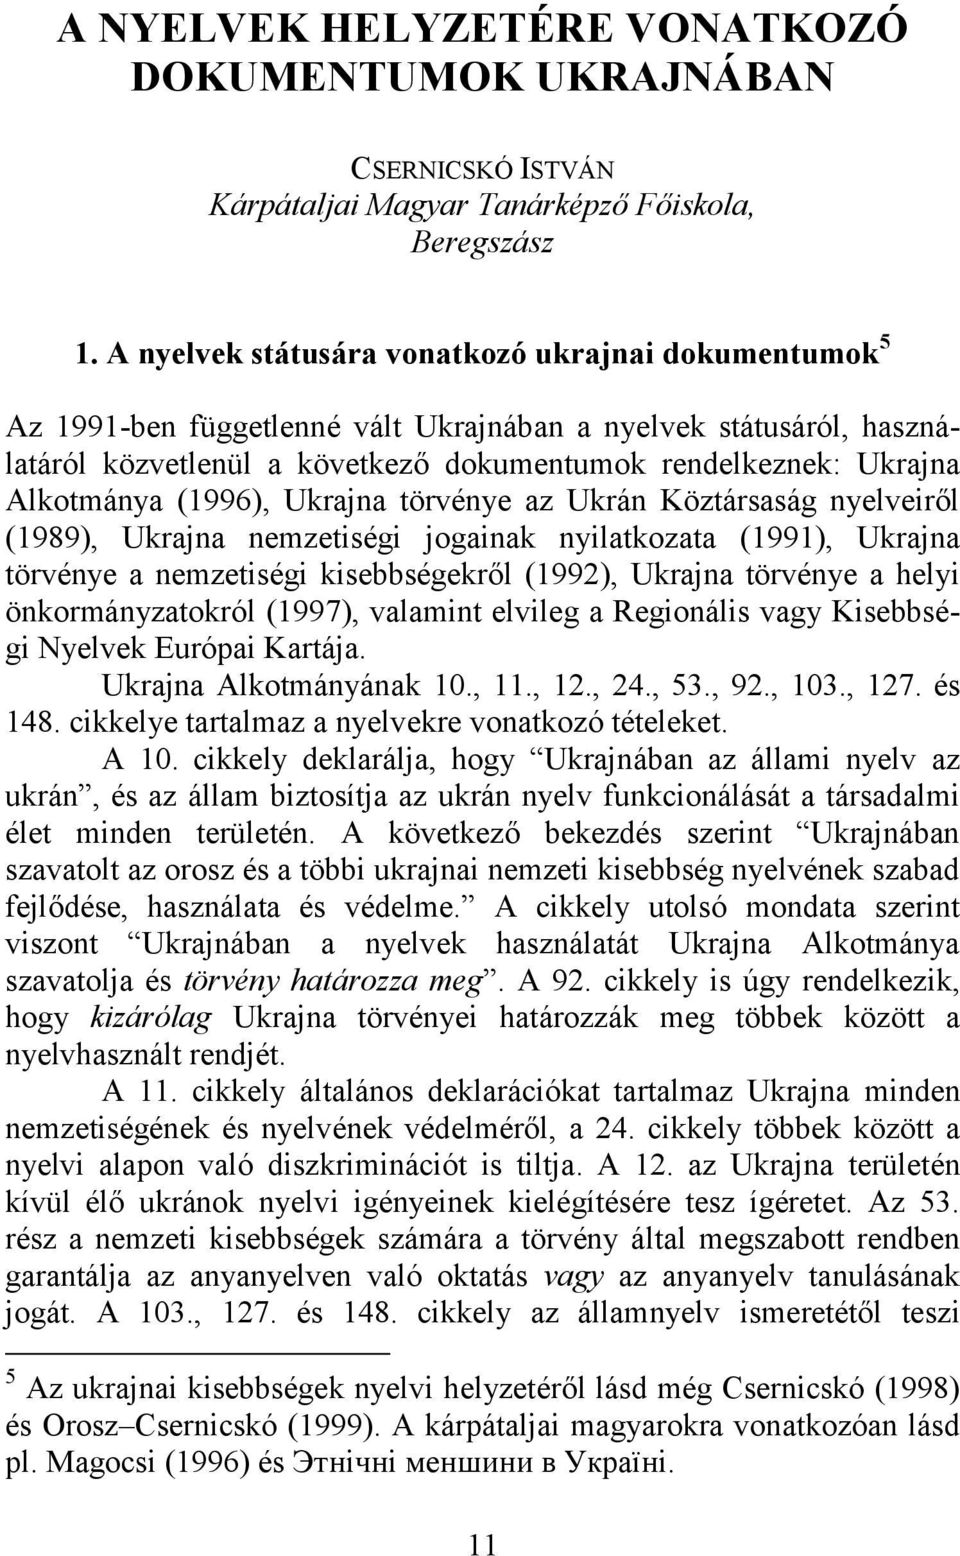 (1996), Ukrajna törvénye az Ukrán Köztársaság nyelveiről (1989), Ukrajna nemzetiségi jogainak nyilatkozata (1991), Ukrajna törvénye a nemzetiségi kisebbségekről (1992), Ukrajna törvénye a helyi